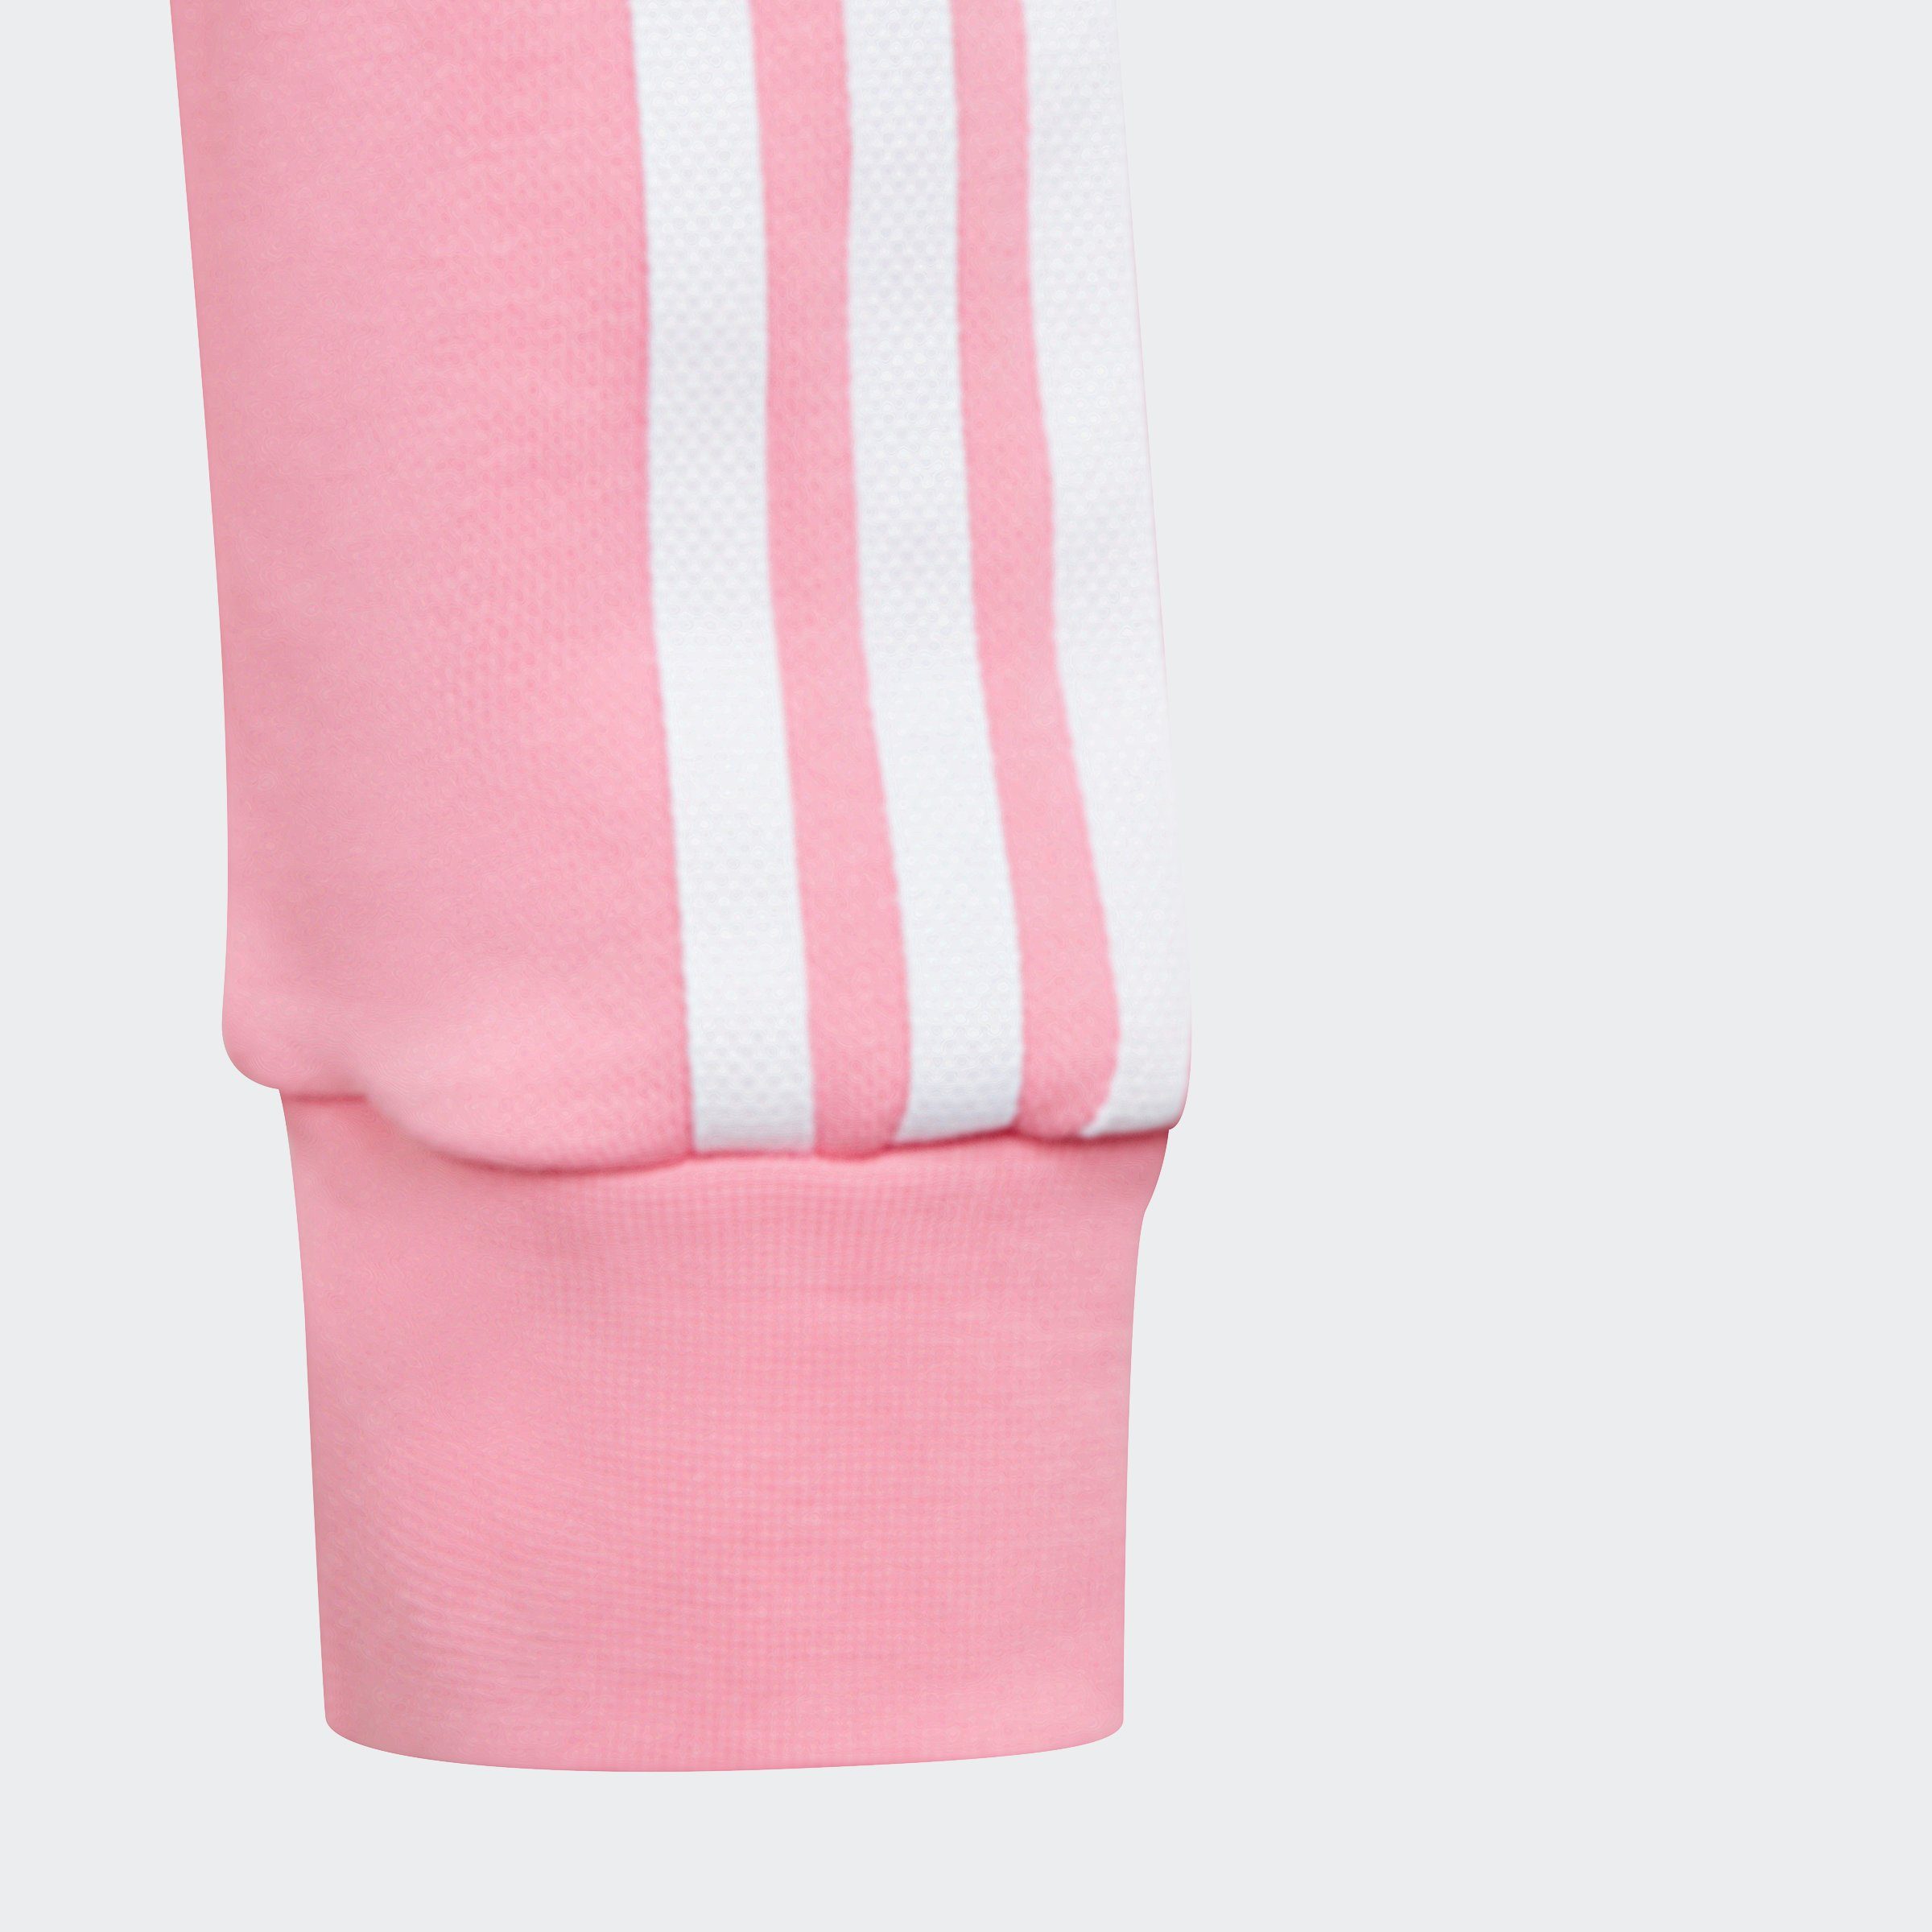 ADICOLOR CROPPED Originals adidas Pink Bliss HOODIE Sweatshirt